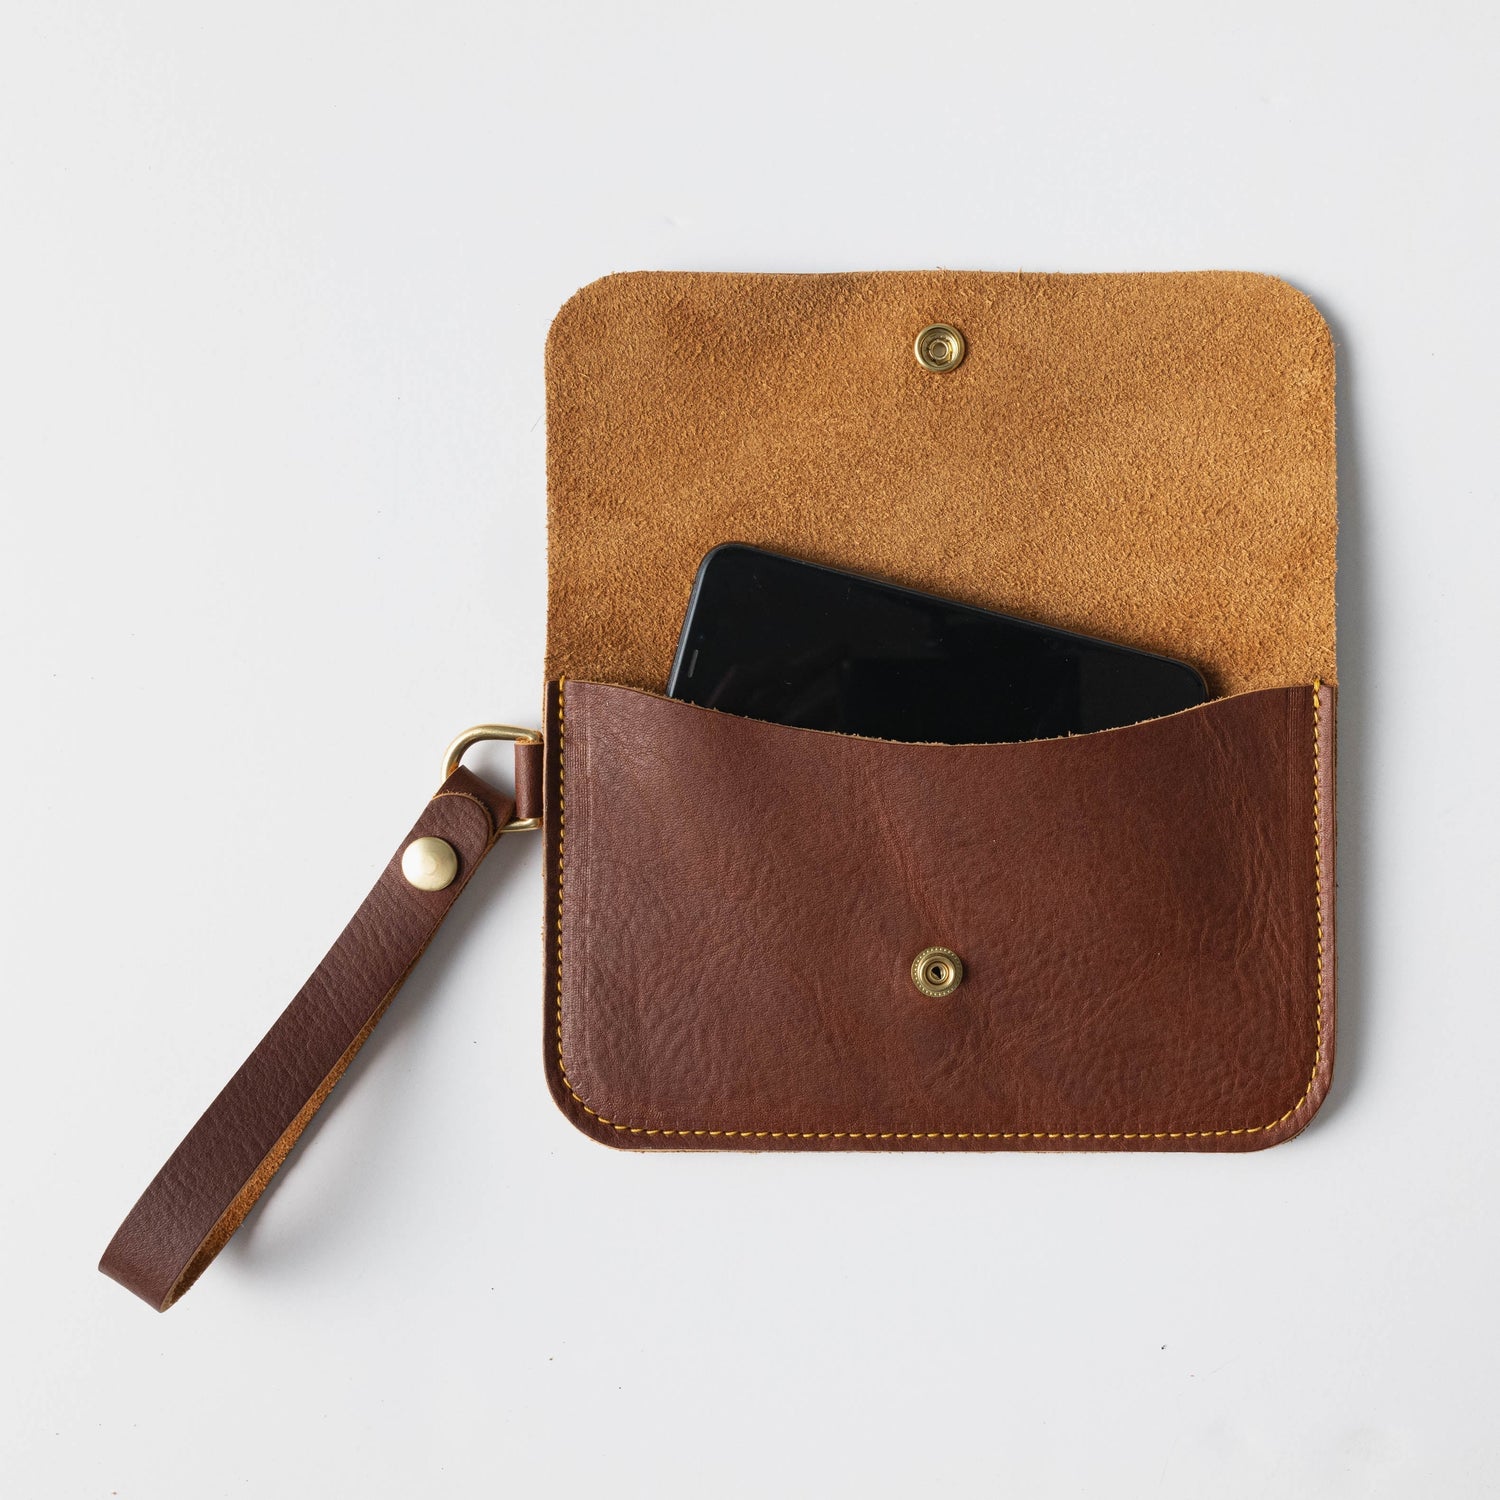 Wristlet Wallet in Brown